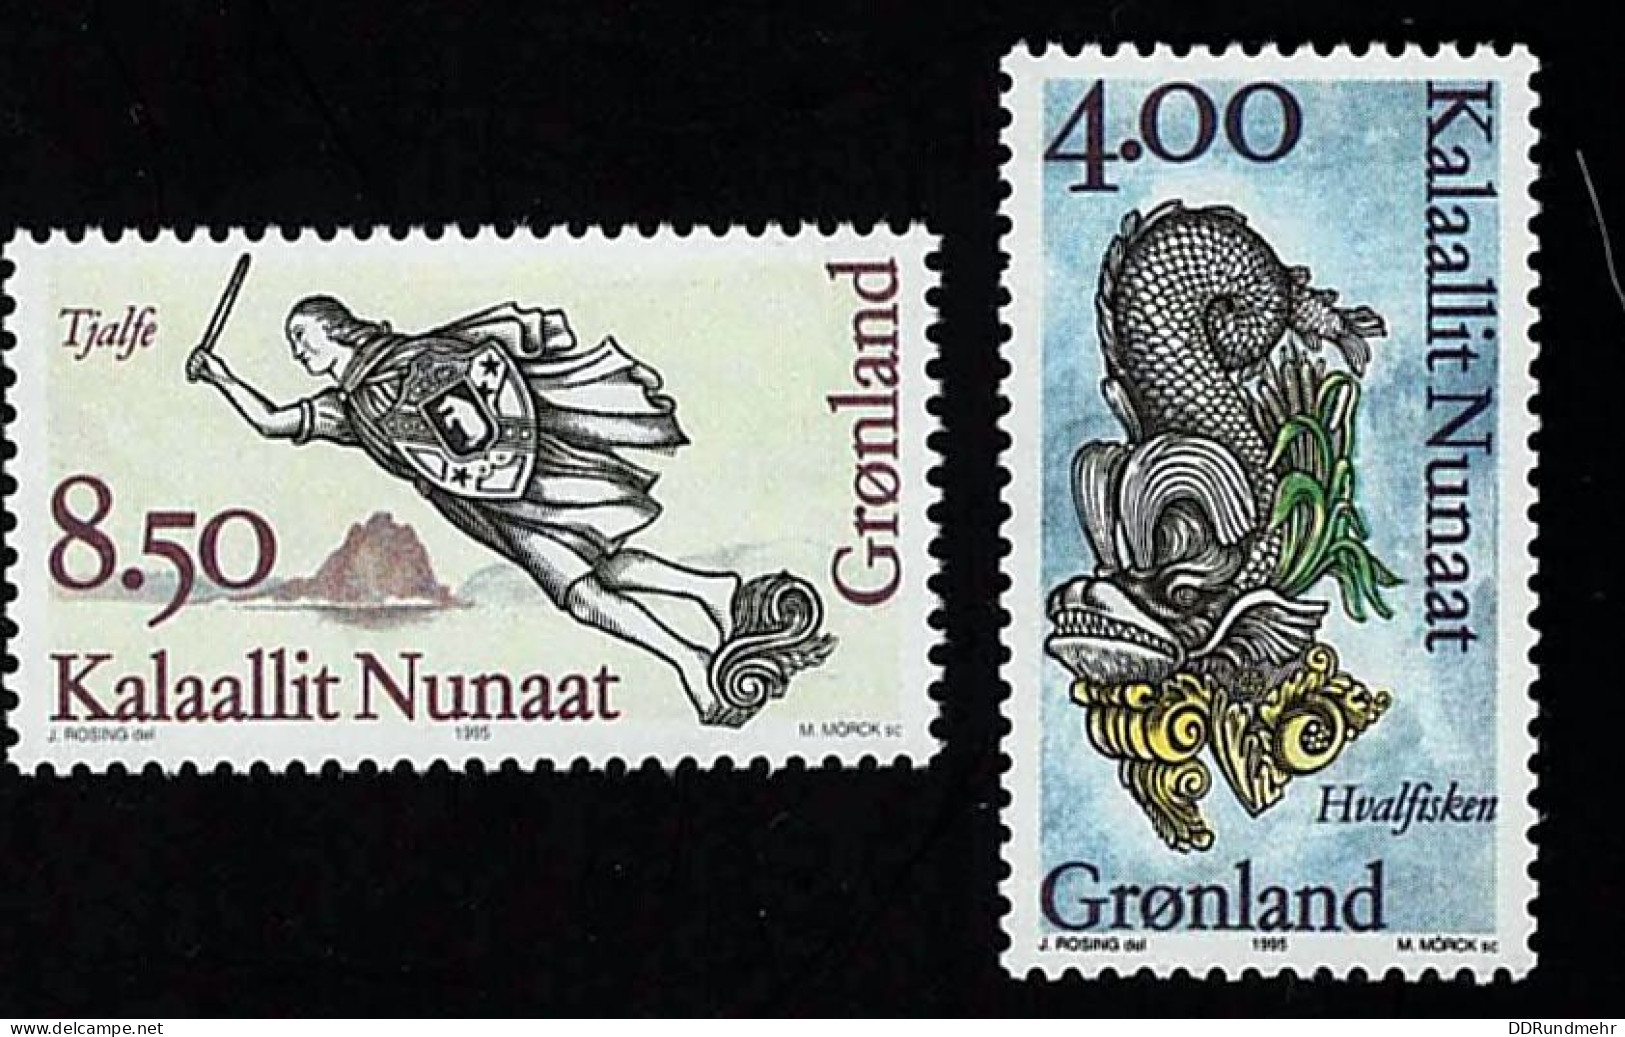 1995 Figureheads  Michel GL 277 - 278 Stamp Number GL 299 - 300 Yvert Et Tellier GL 256 - 257 Xx MNH - Neufs